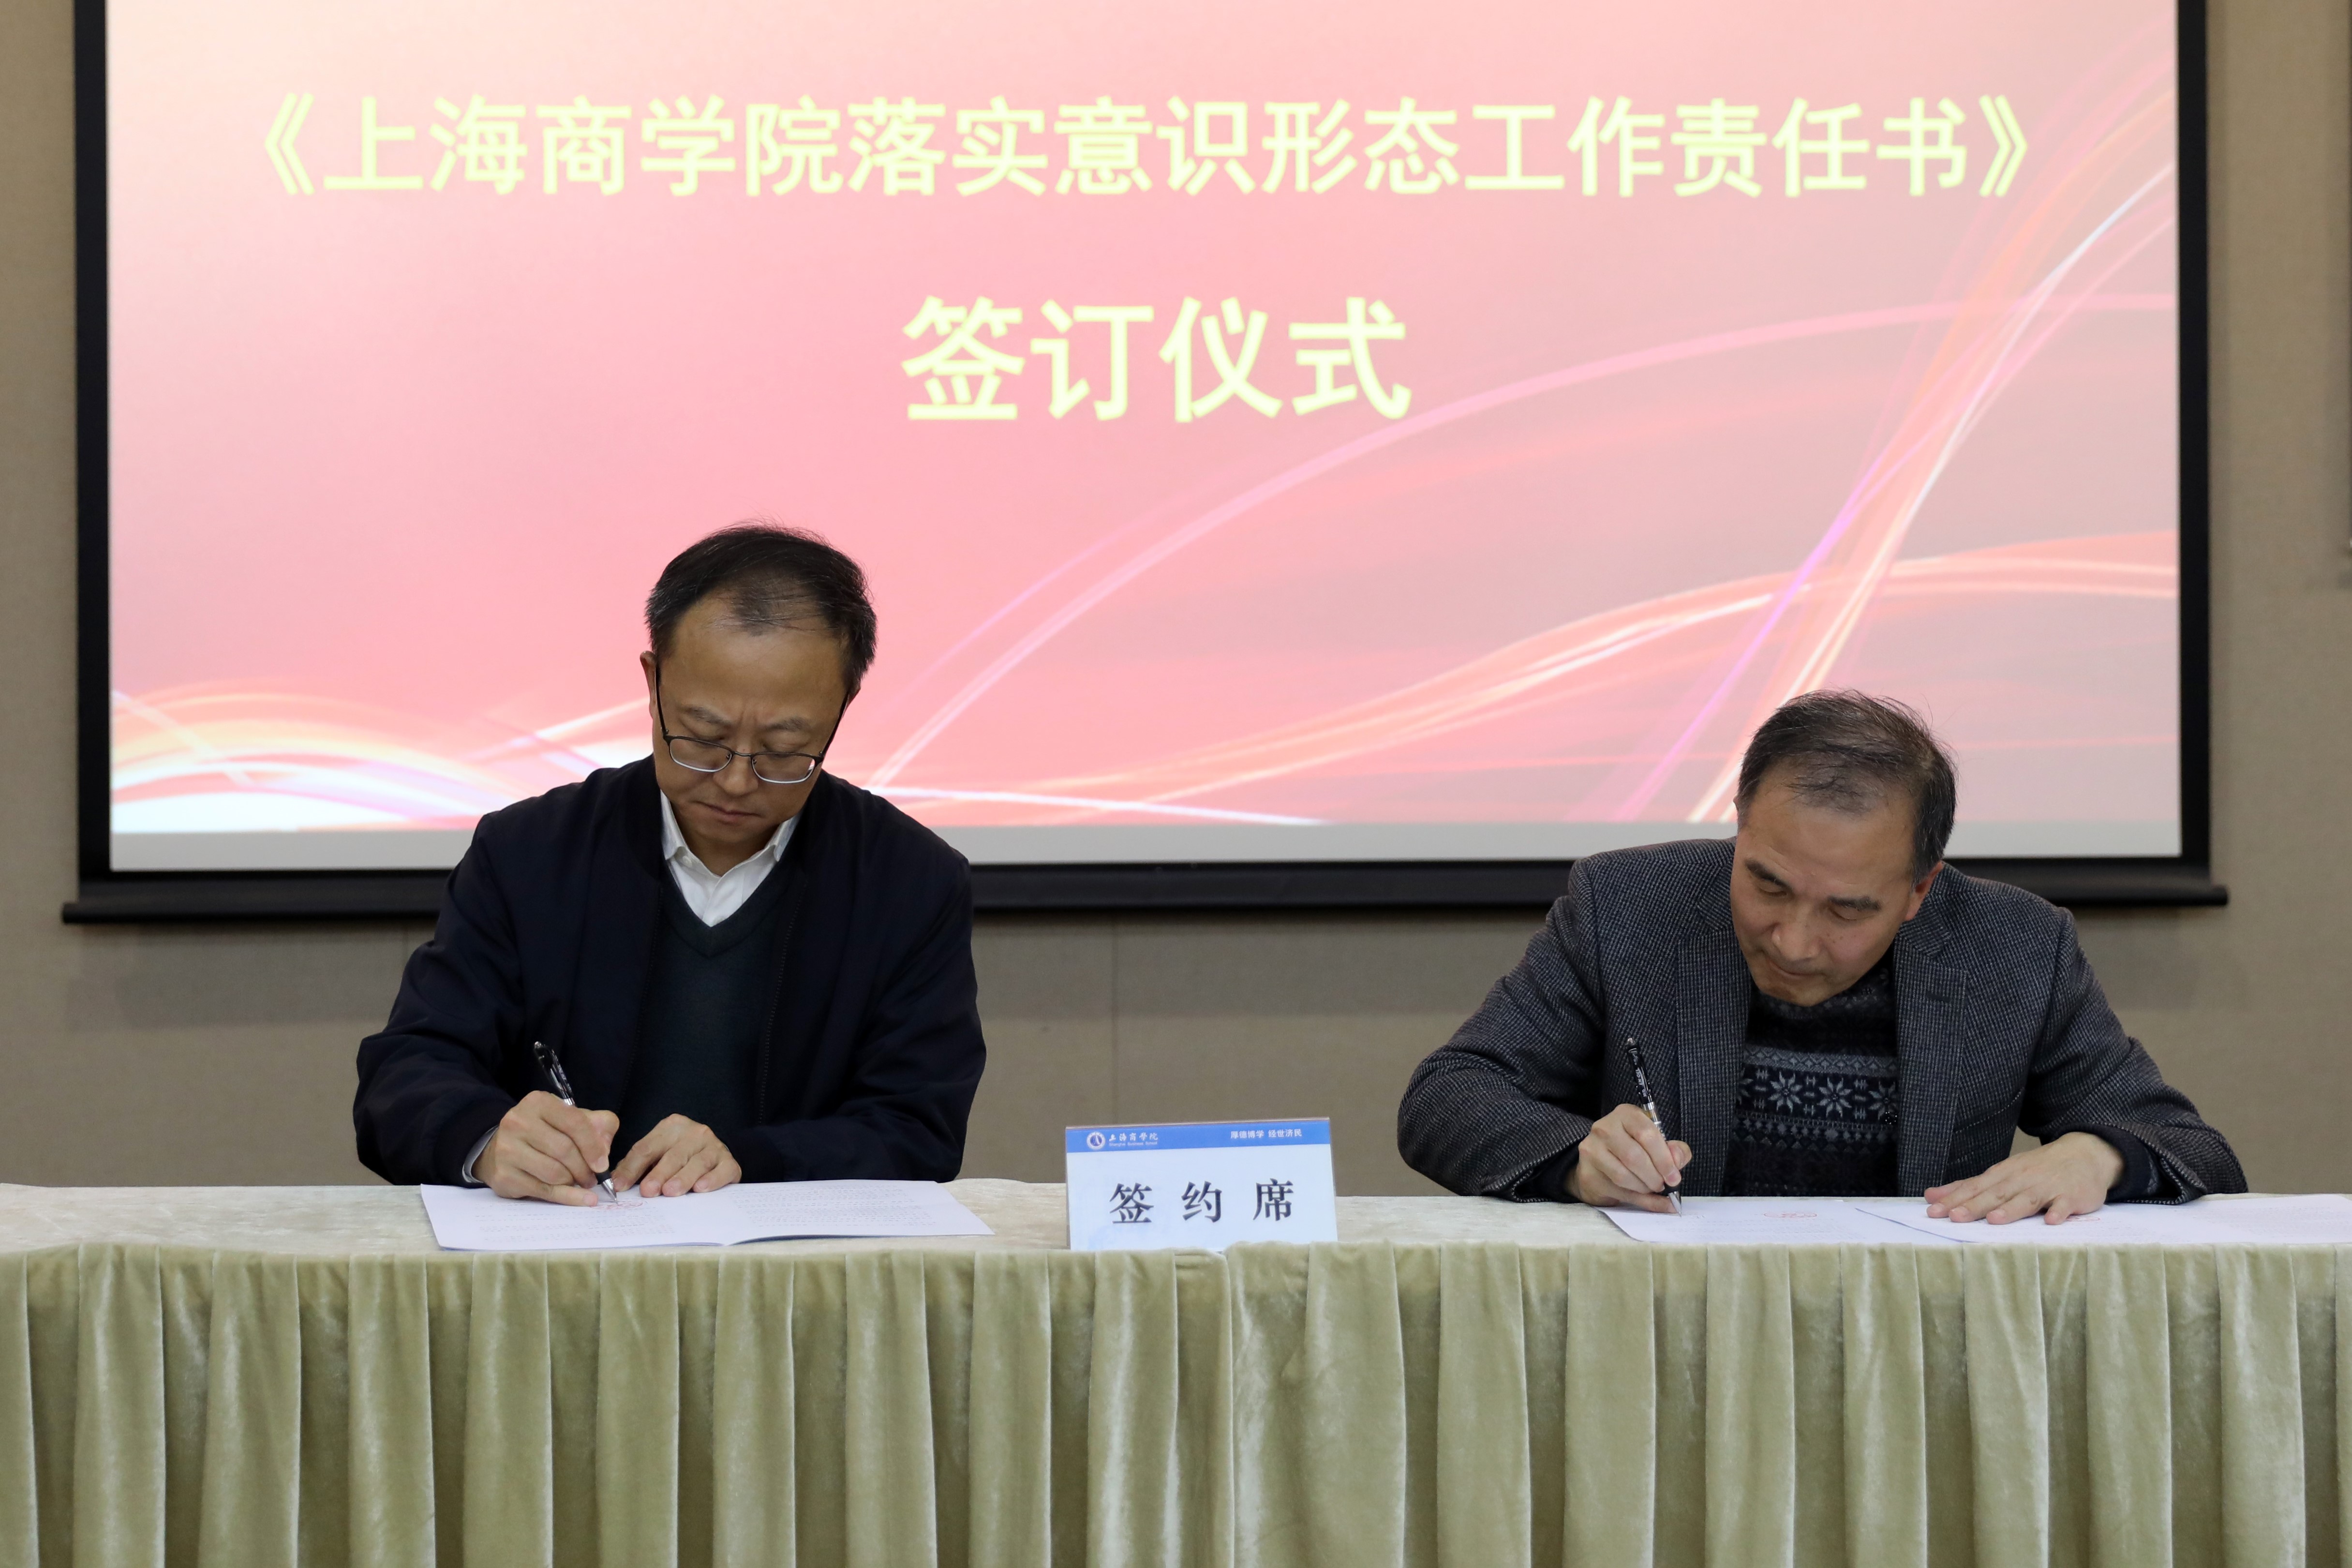 沈大明与学院代表签订了《上海商学院落实意识形态工作责任书》